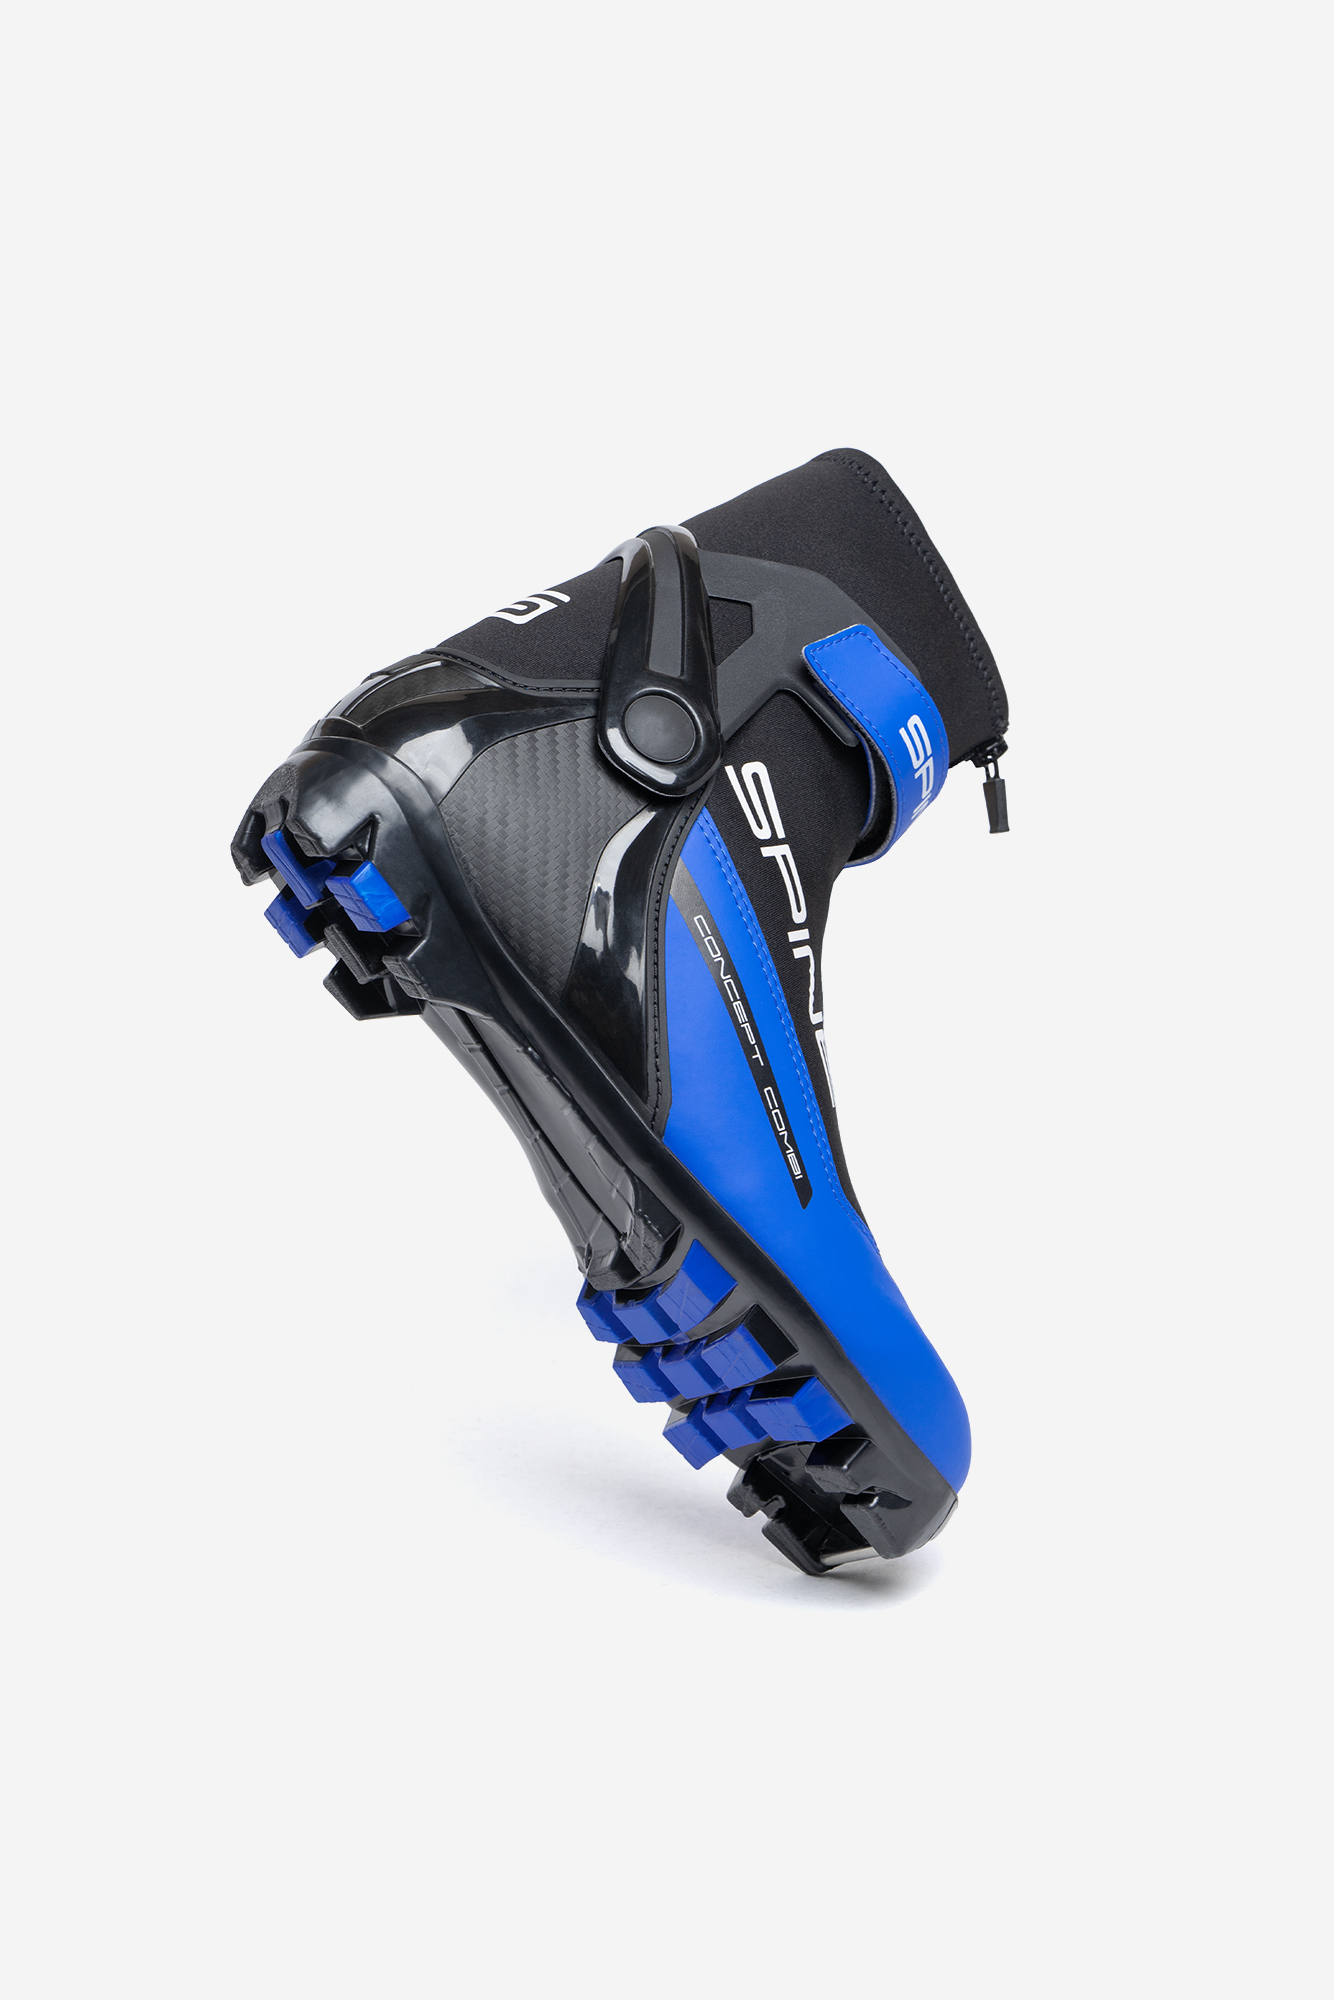 Лыжные ботинки NNN Spine Concept Combi (268/1-22) (синий) 1334_2000